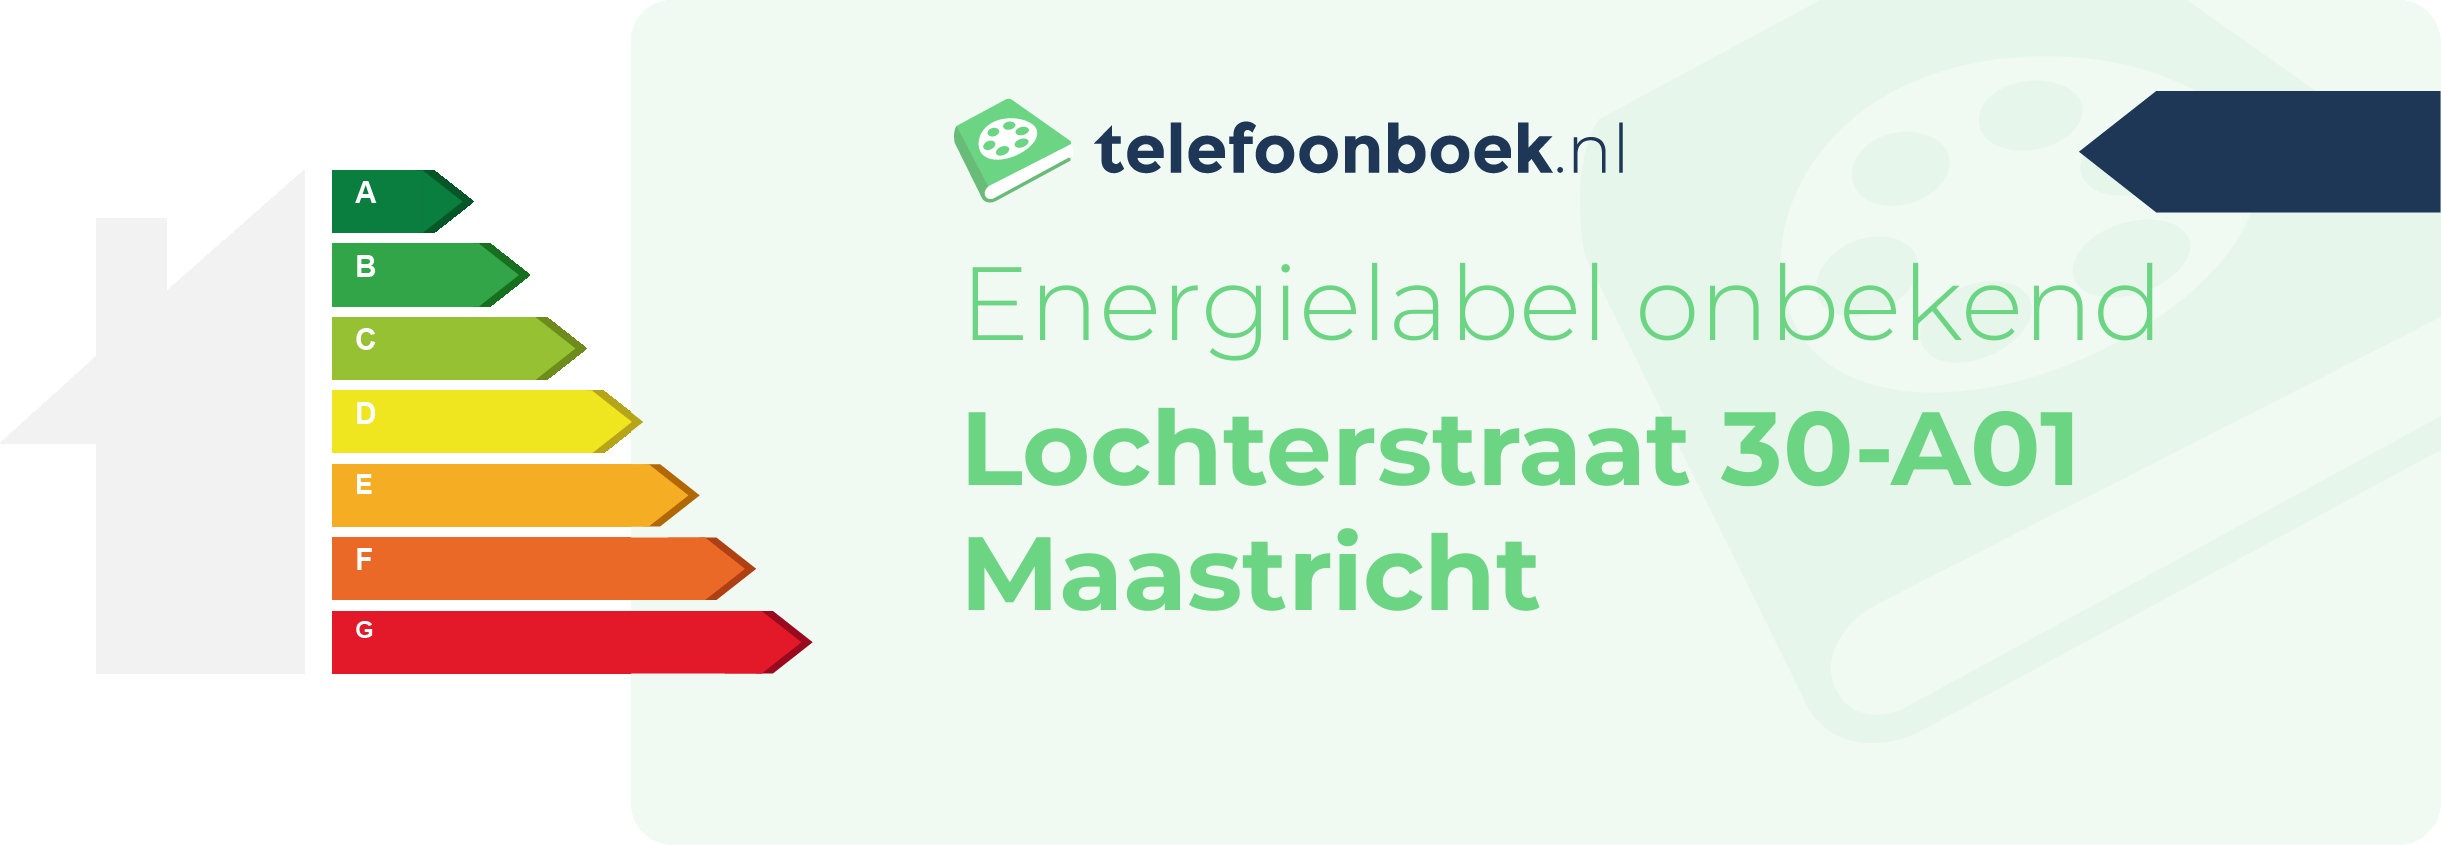 Energielabel Lochterstraat 30-A01 Maastricht